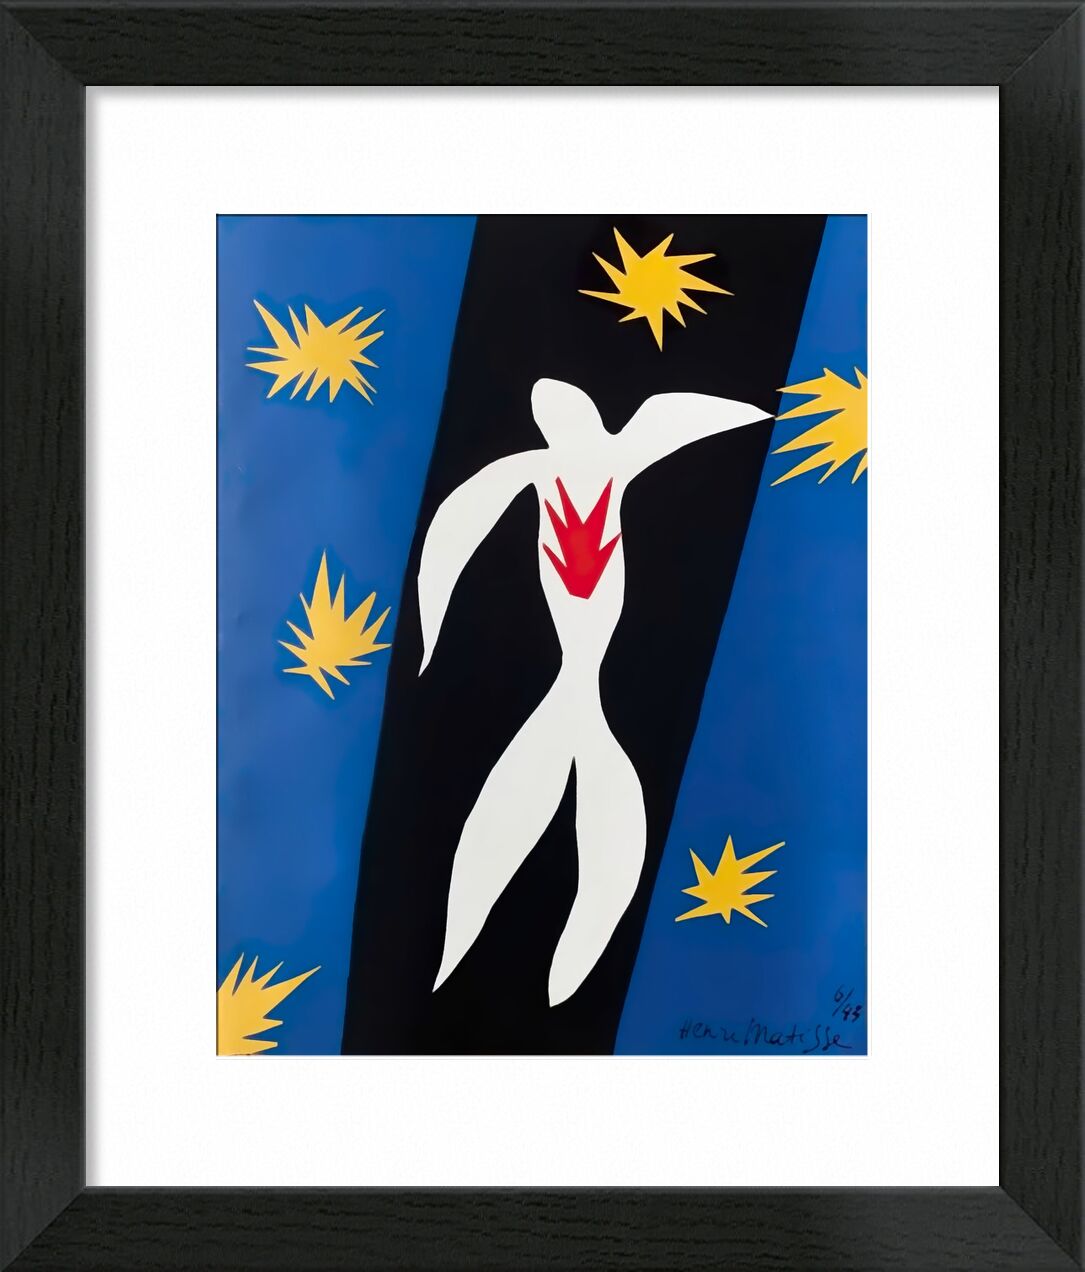 Fall of Icarus - Henri Matisse von Bildende Kunst, Prodi Art, chutte, Sterne, Zeichnung, Matisse